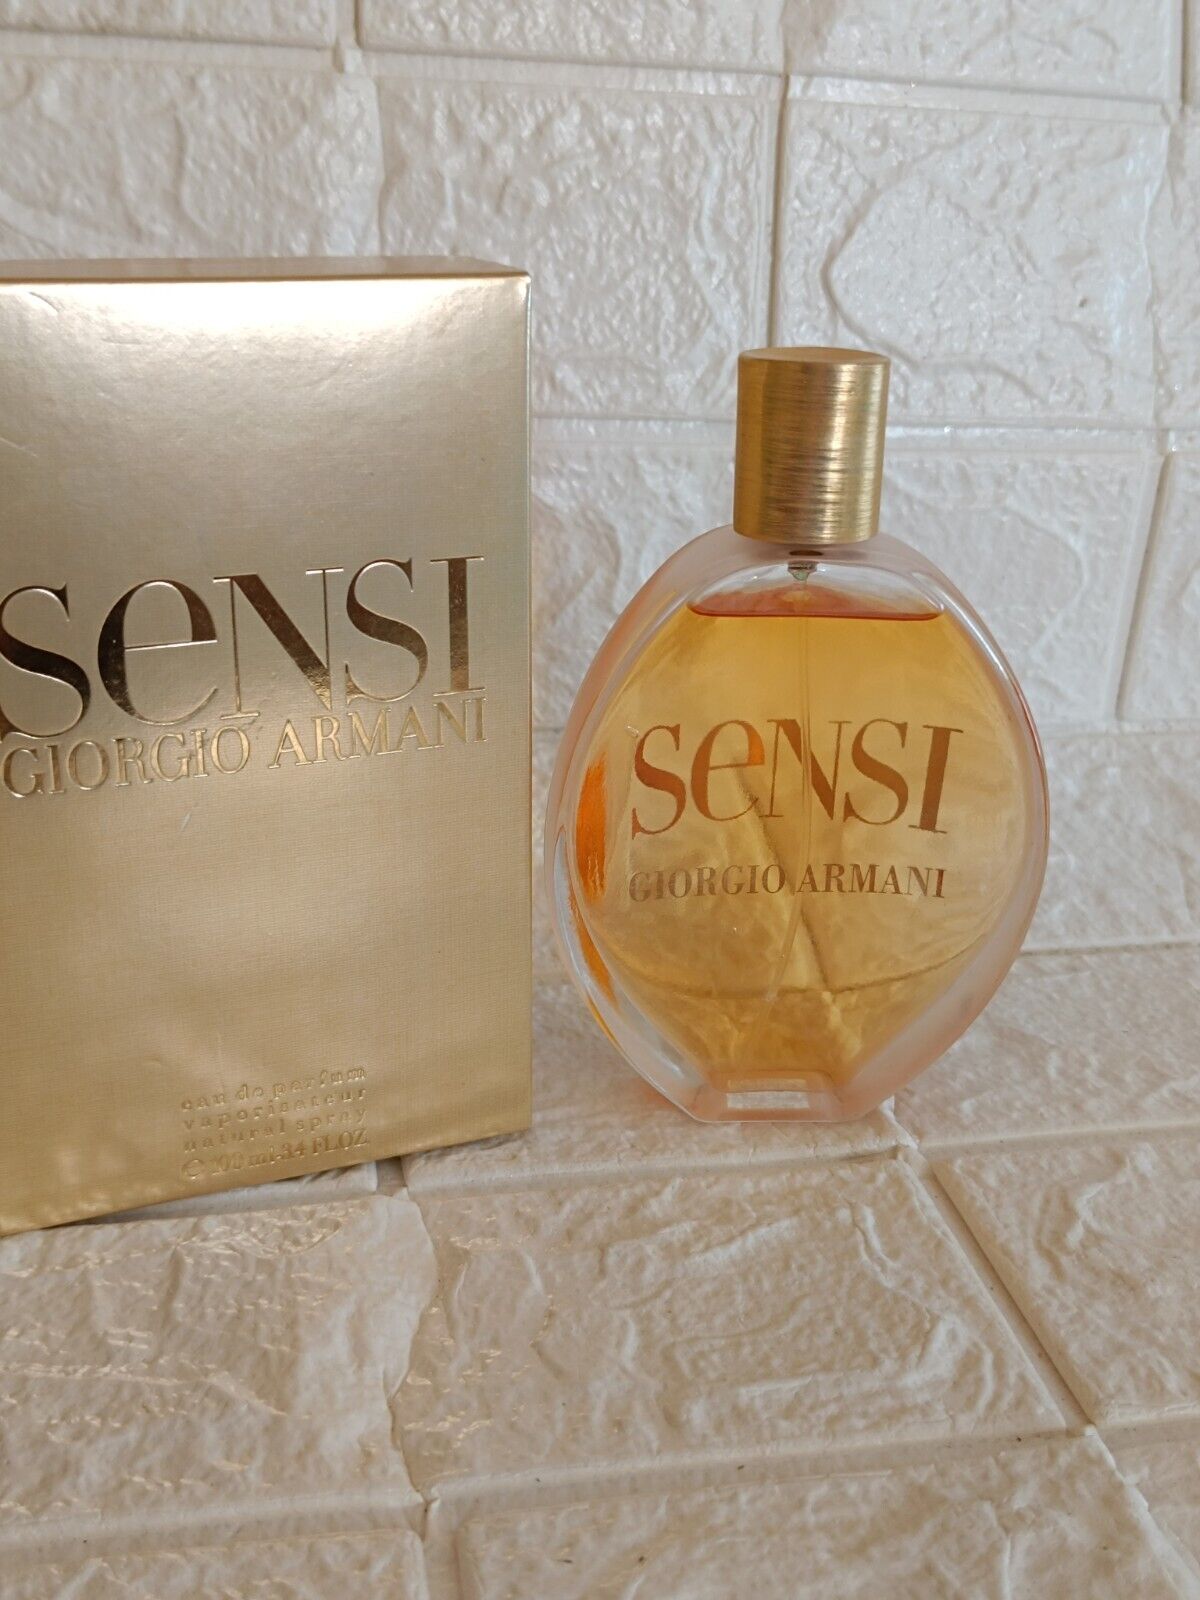 SENSI  GIORGIO ARMANI 3.4 FL oz 100 ML Eau De Parfum SPRAY Box Rare Discontinued